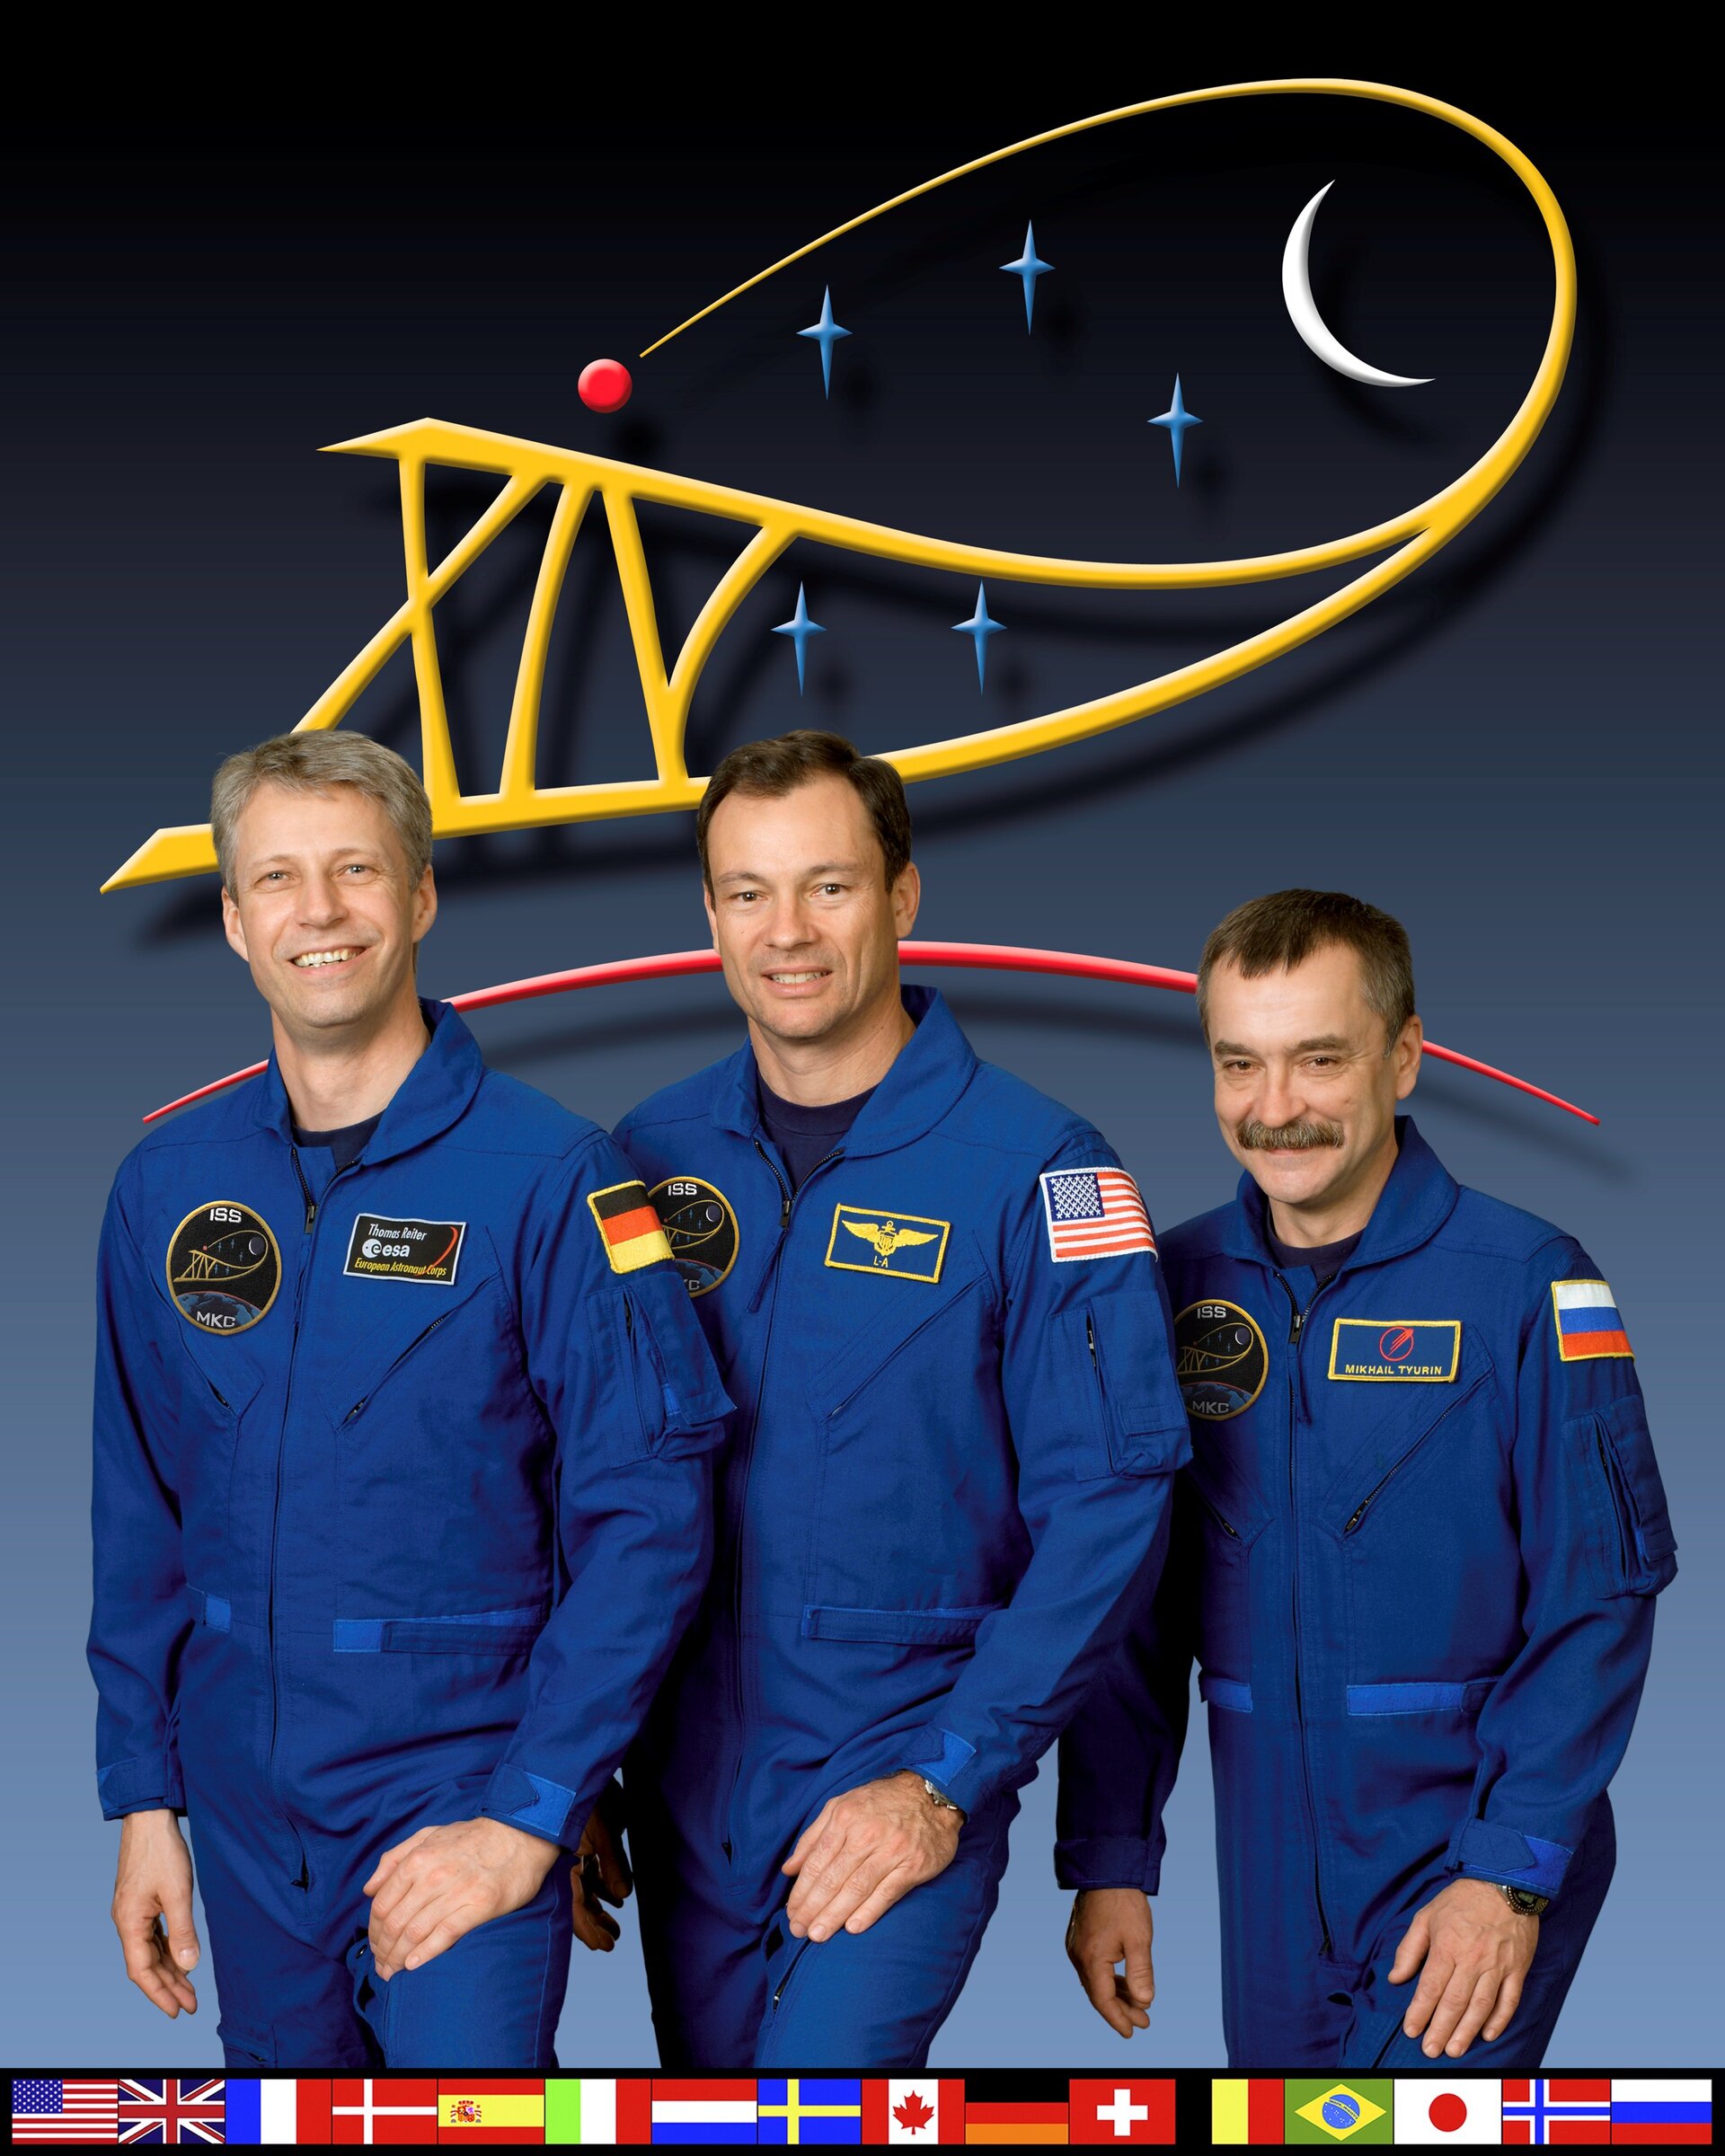 Die ISS Expedition 14 Crew übernimmt das Kommando über die ISS - von links: Thomas Reiter, Michael E. Lopez-Alegria und Mikhail Tyurin